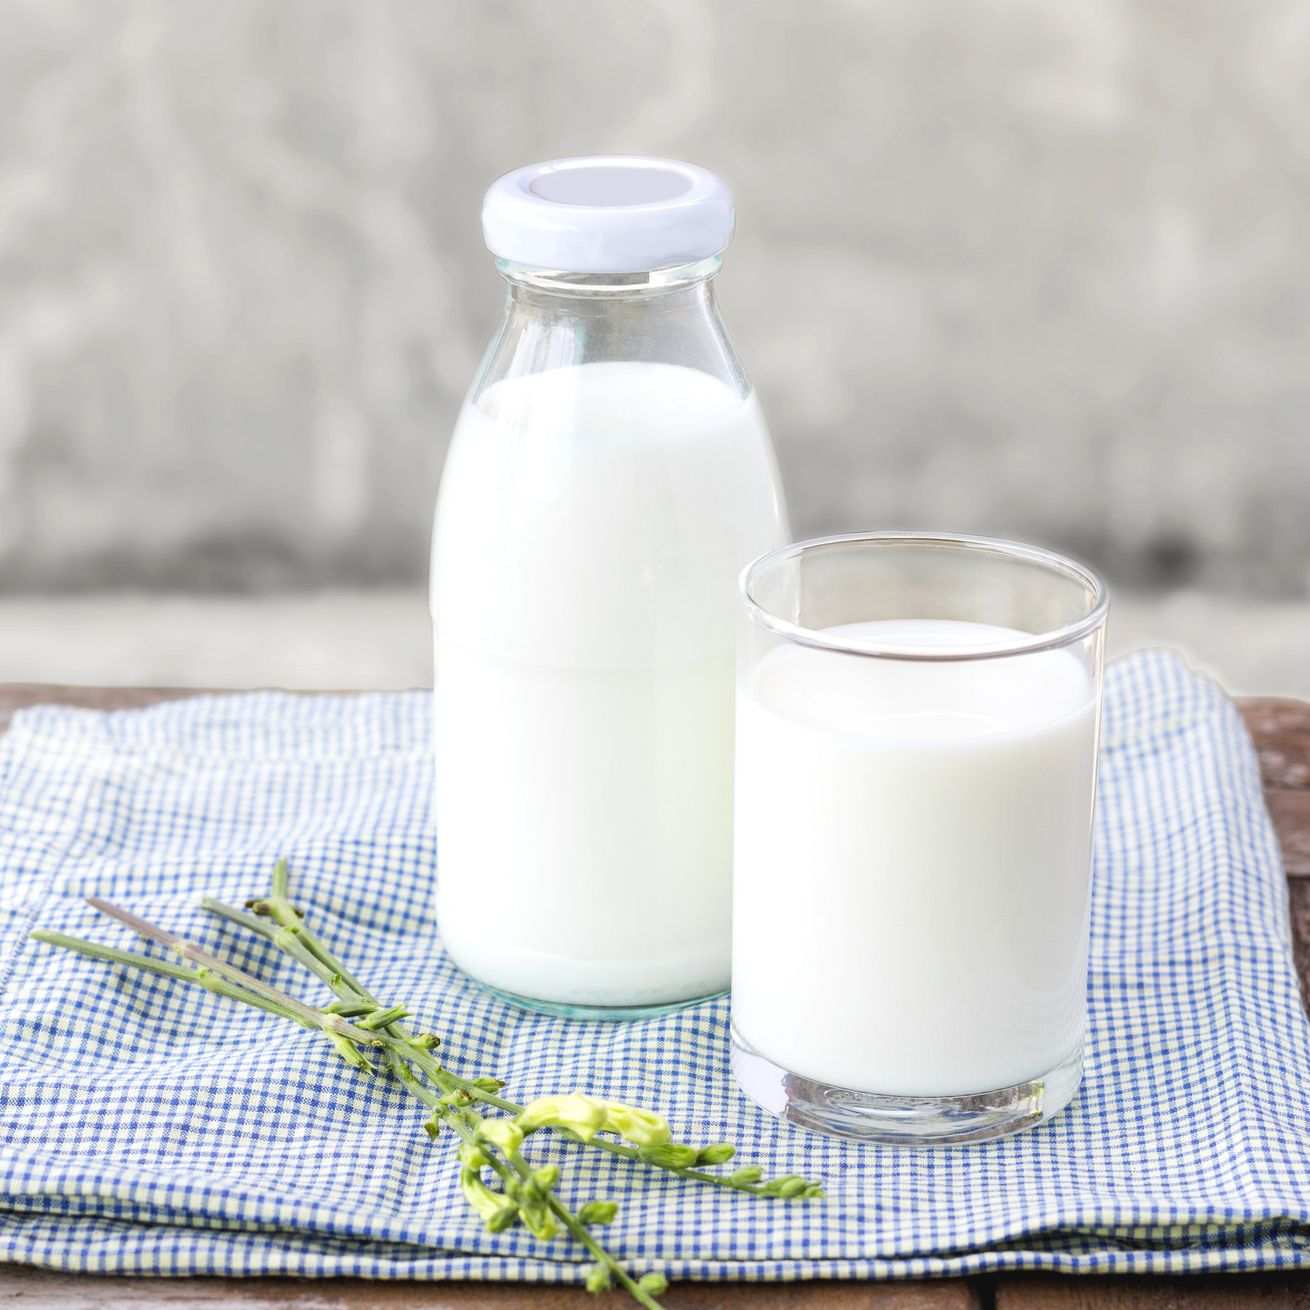 فوائد الحليب للجسم و البشرة